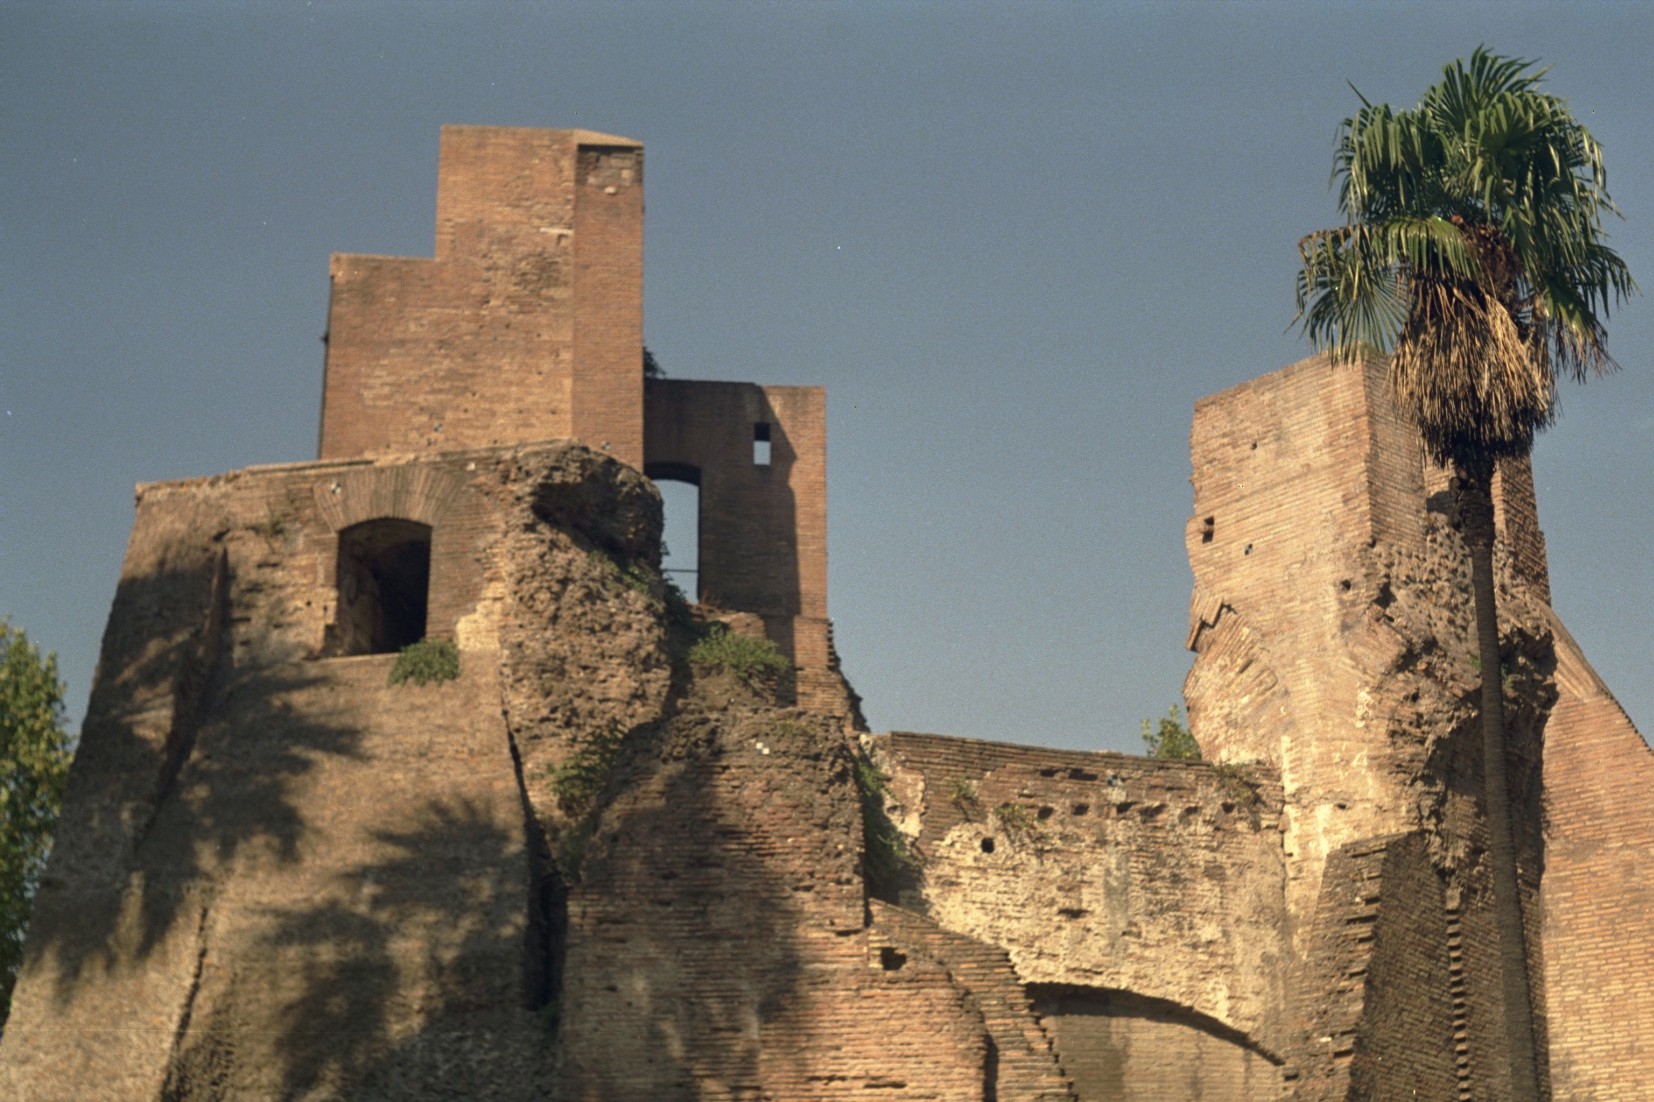 Foto: Ruine in Rom 1990